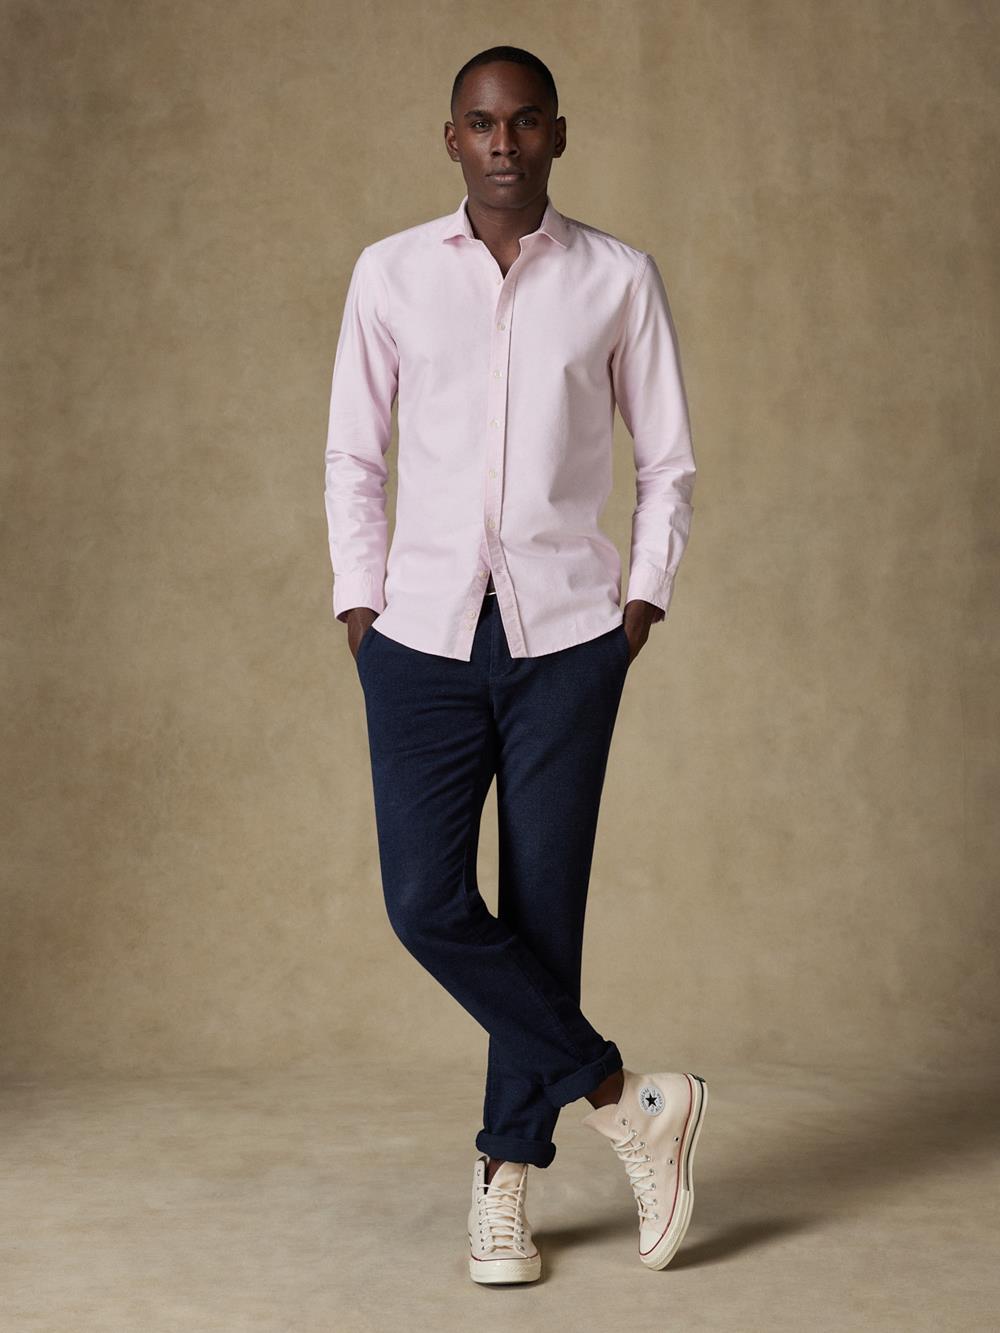 Roze biologisch gewassen oxford Slim fit overhemd